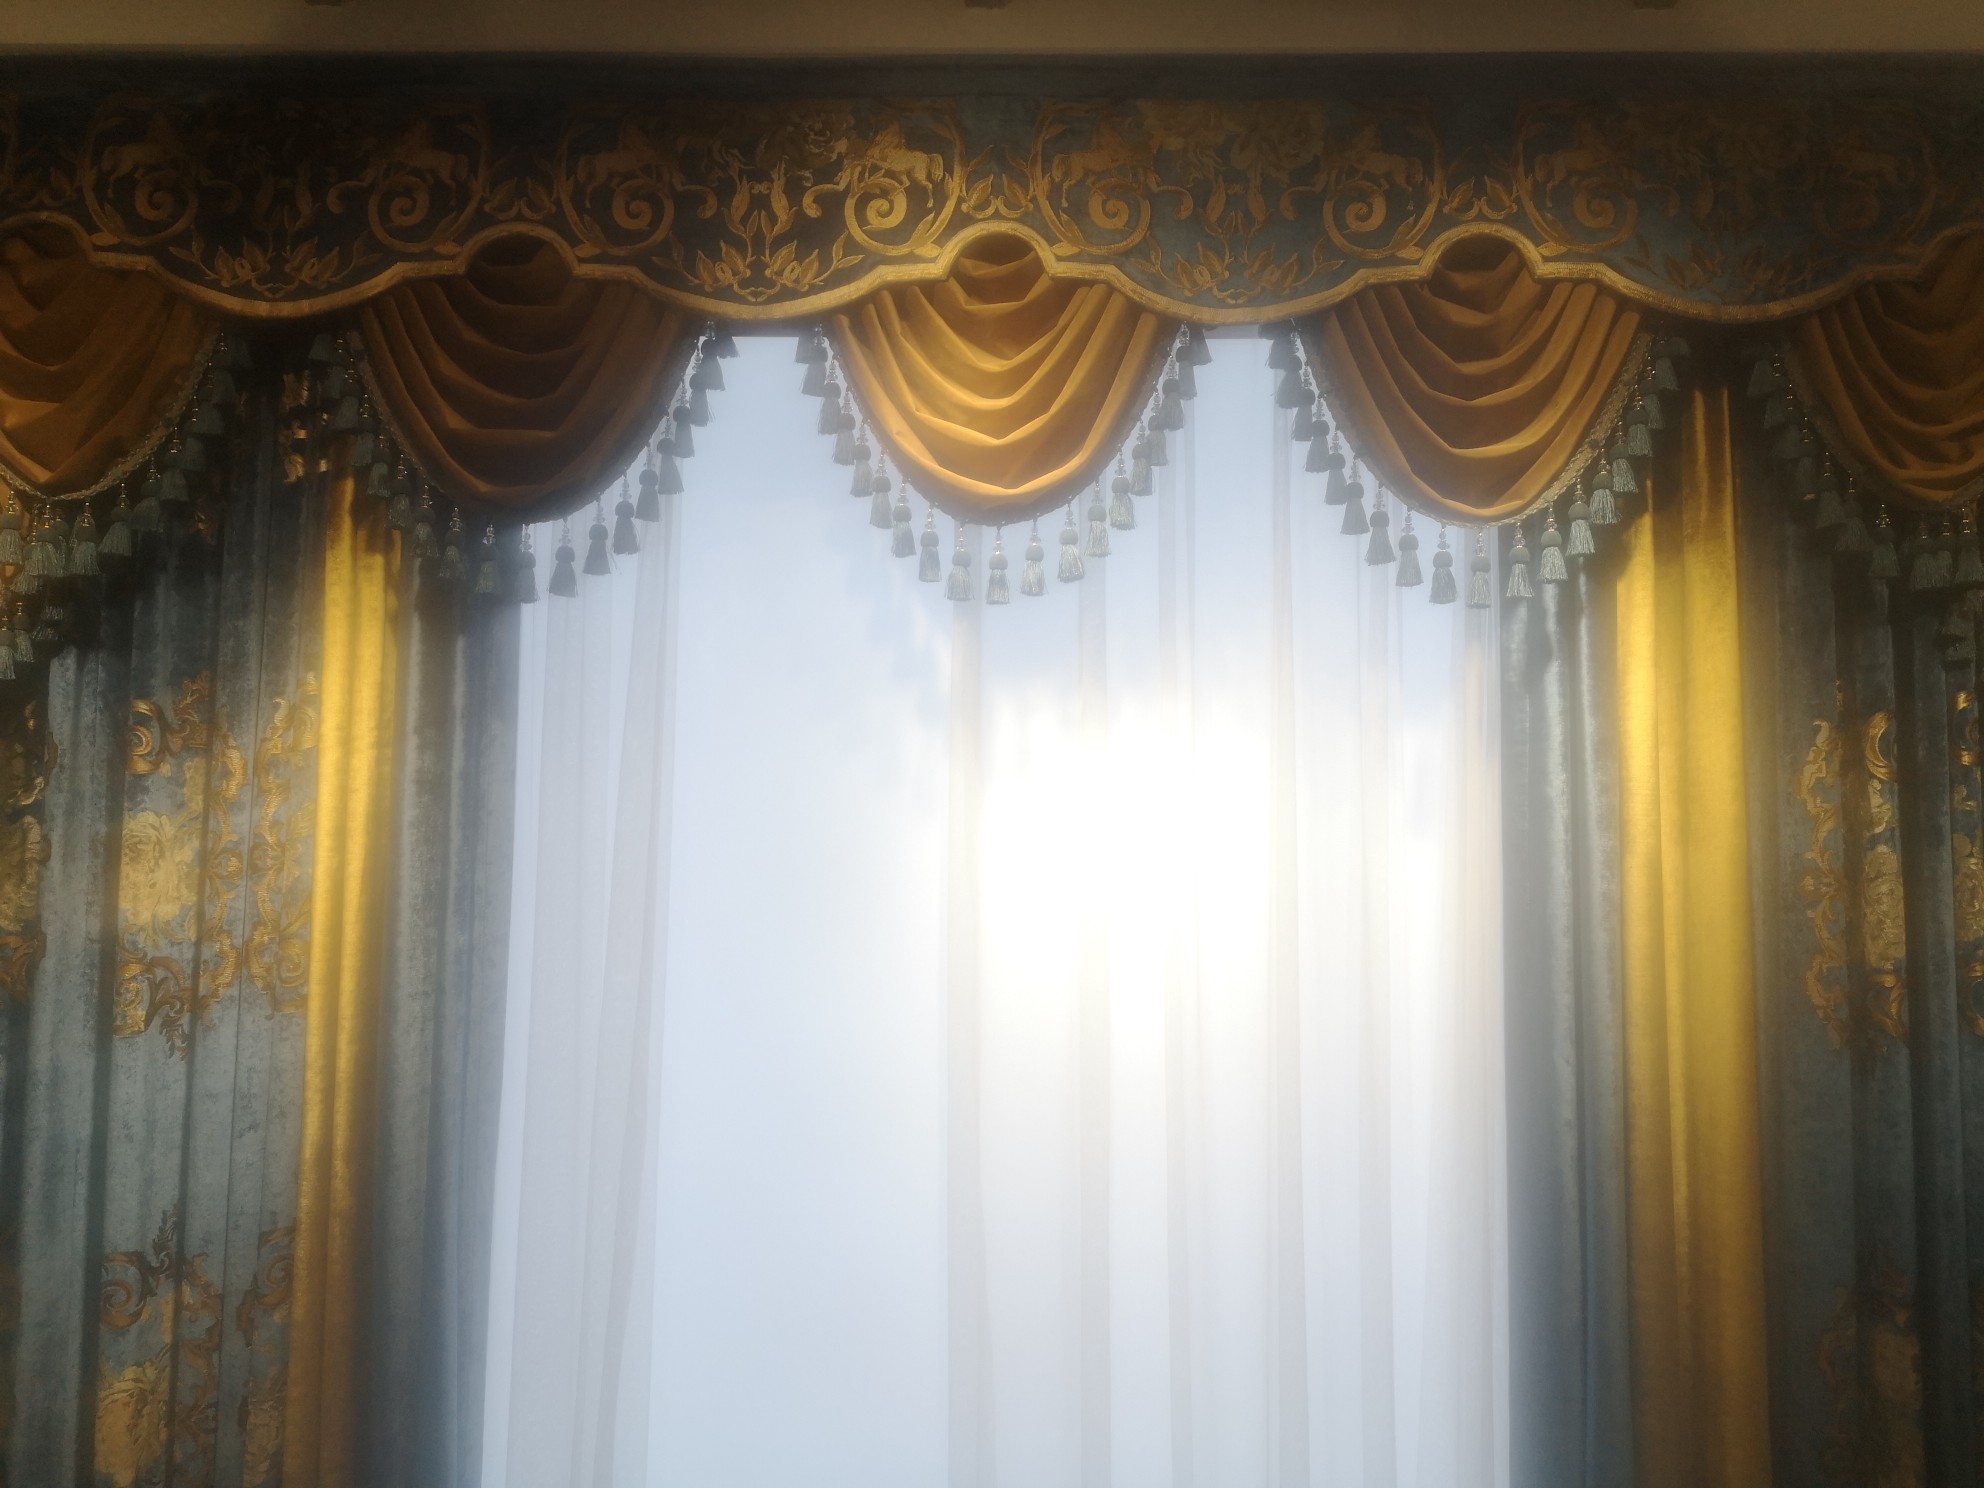 布朗斯欧式风格客厅窗帘高贵奢华遮光价格为380元/米图